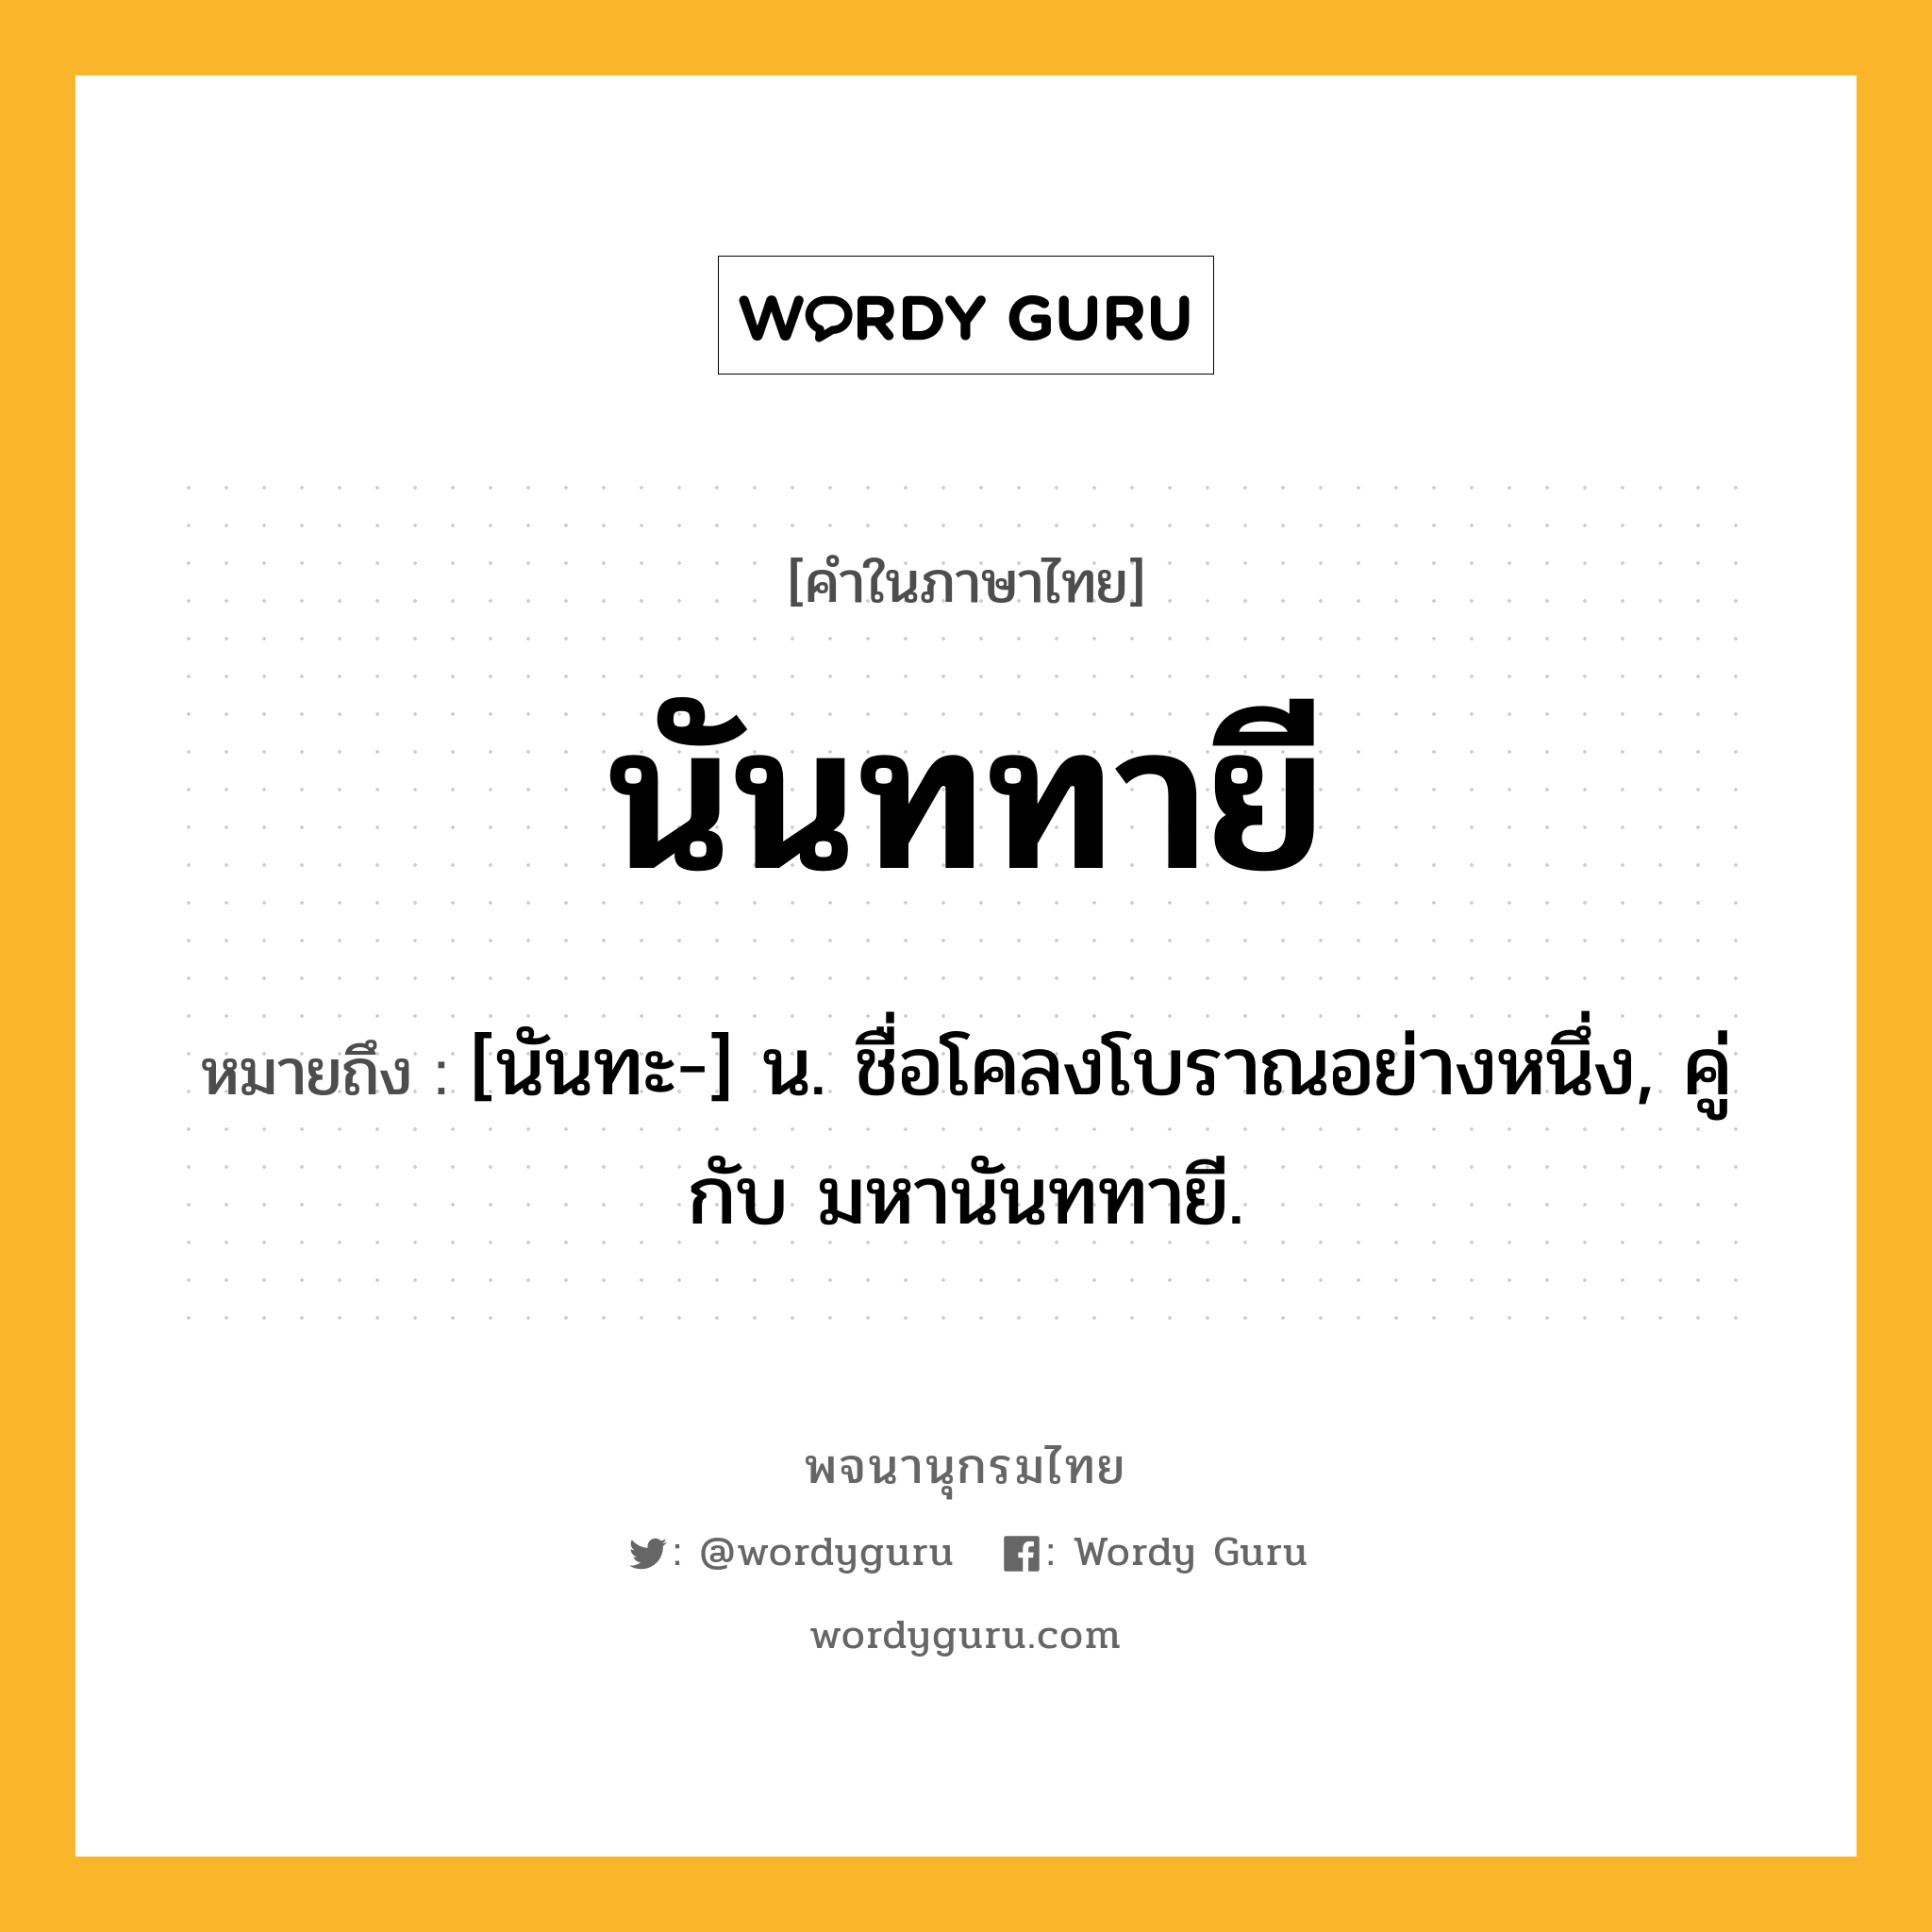 นันททายี ความหมาย หมายถึงอะไร?, คำในภาษาไทย นันททายี หมายถึง [นันทะ-] น. ชื่อโคลงโบราณอย่างหนึ่ง, คู่กับ มหานันททายี.